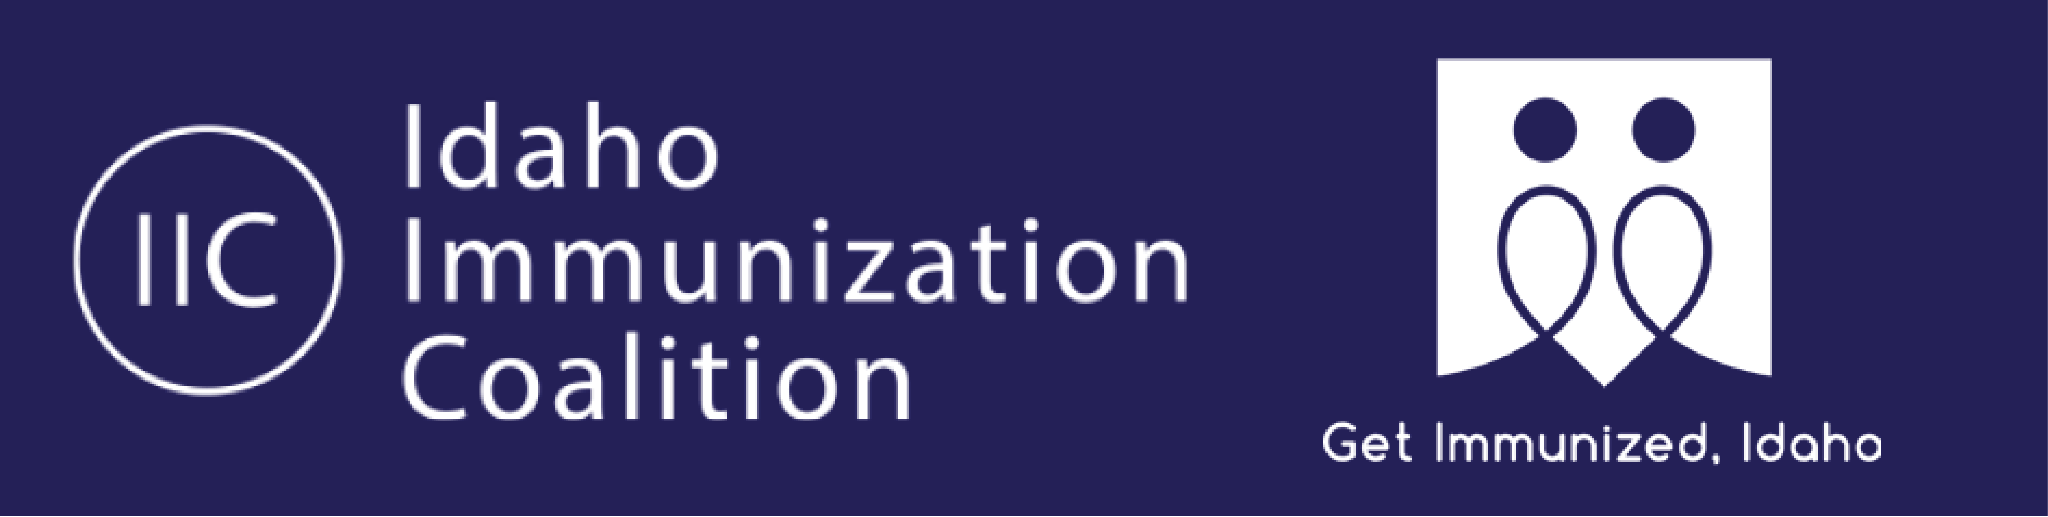 Idaho Immunization Coalition logo